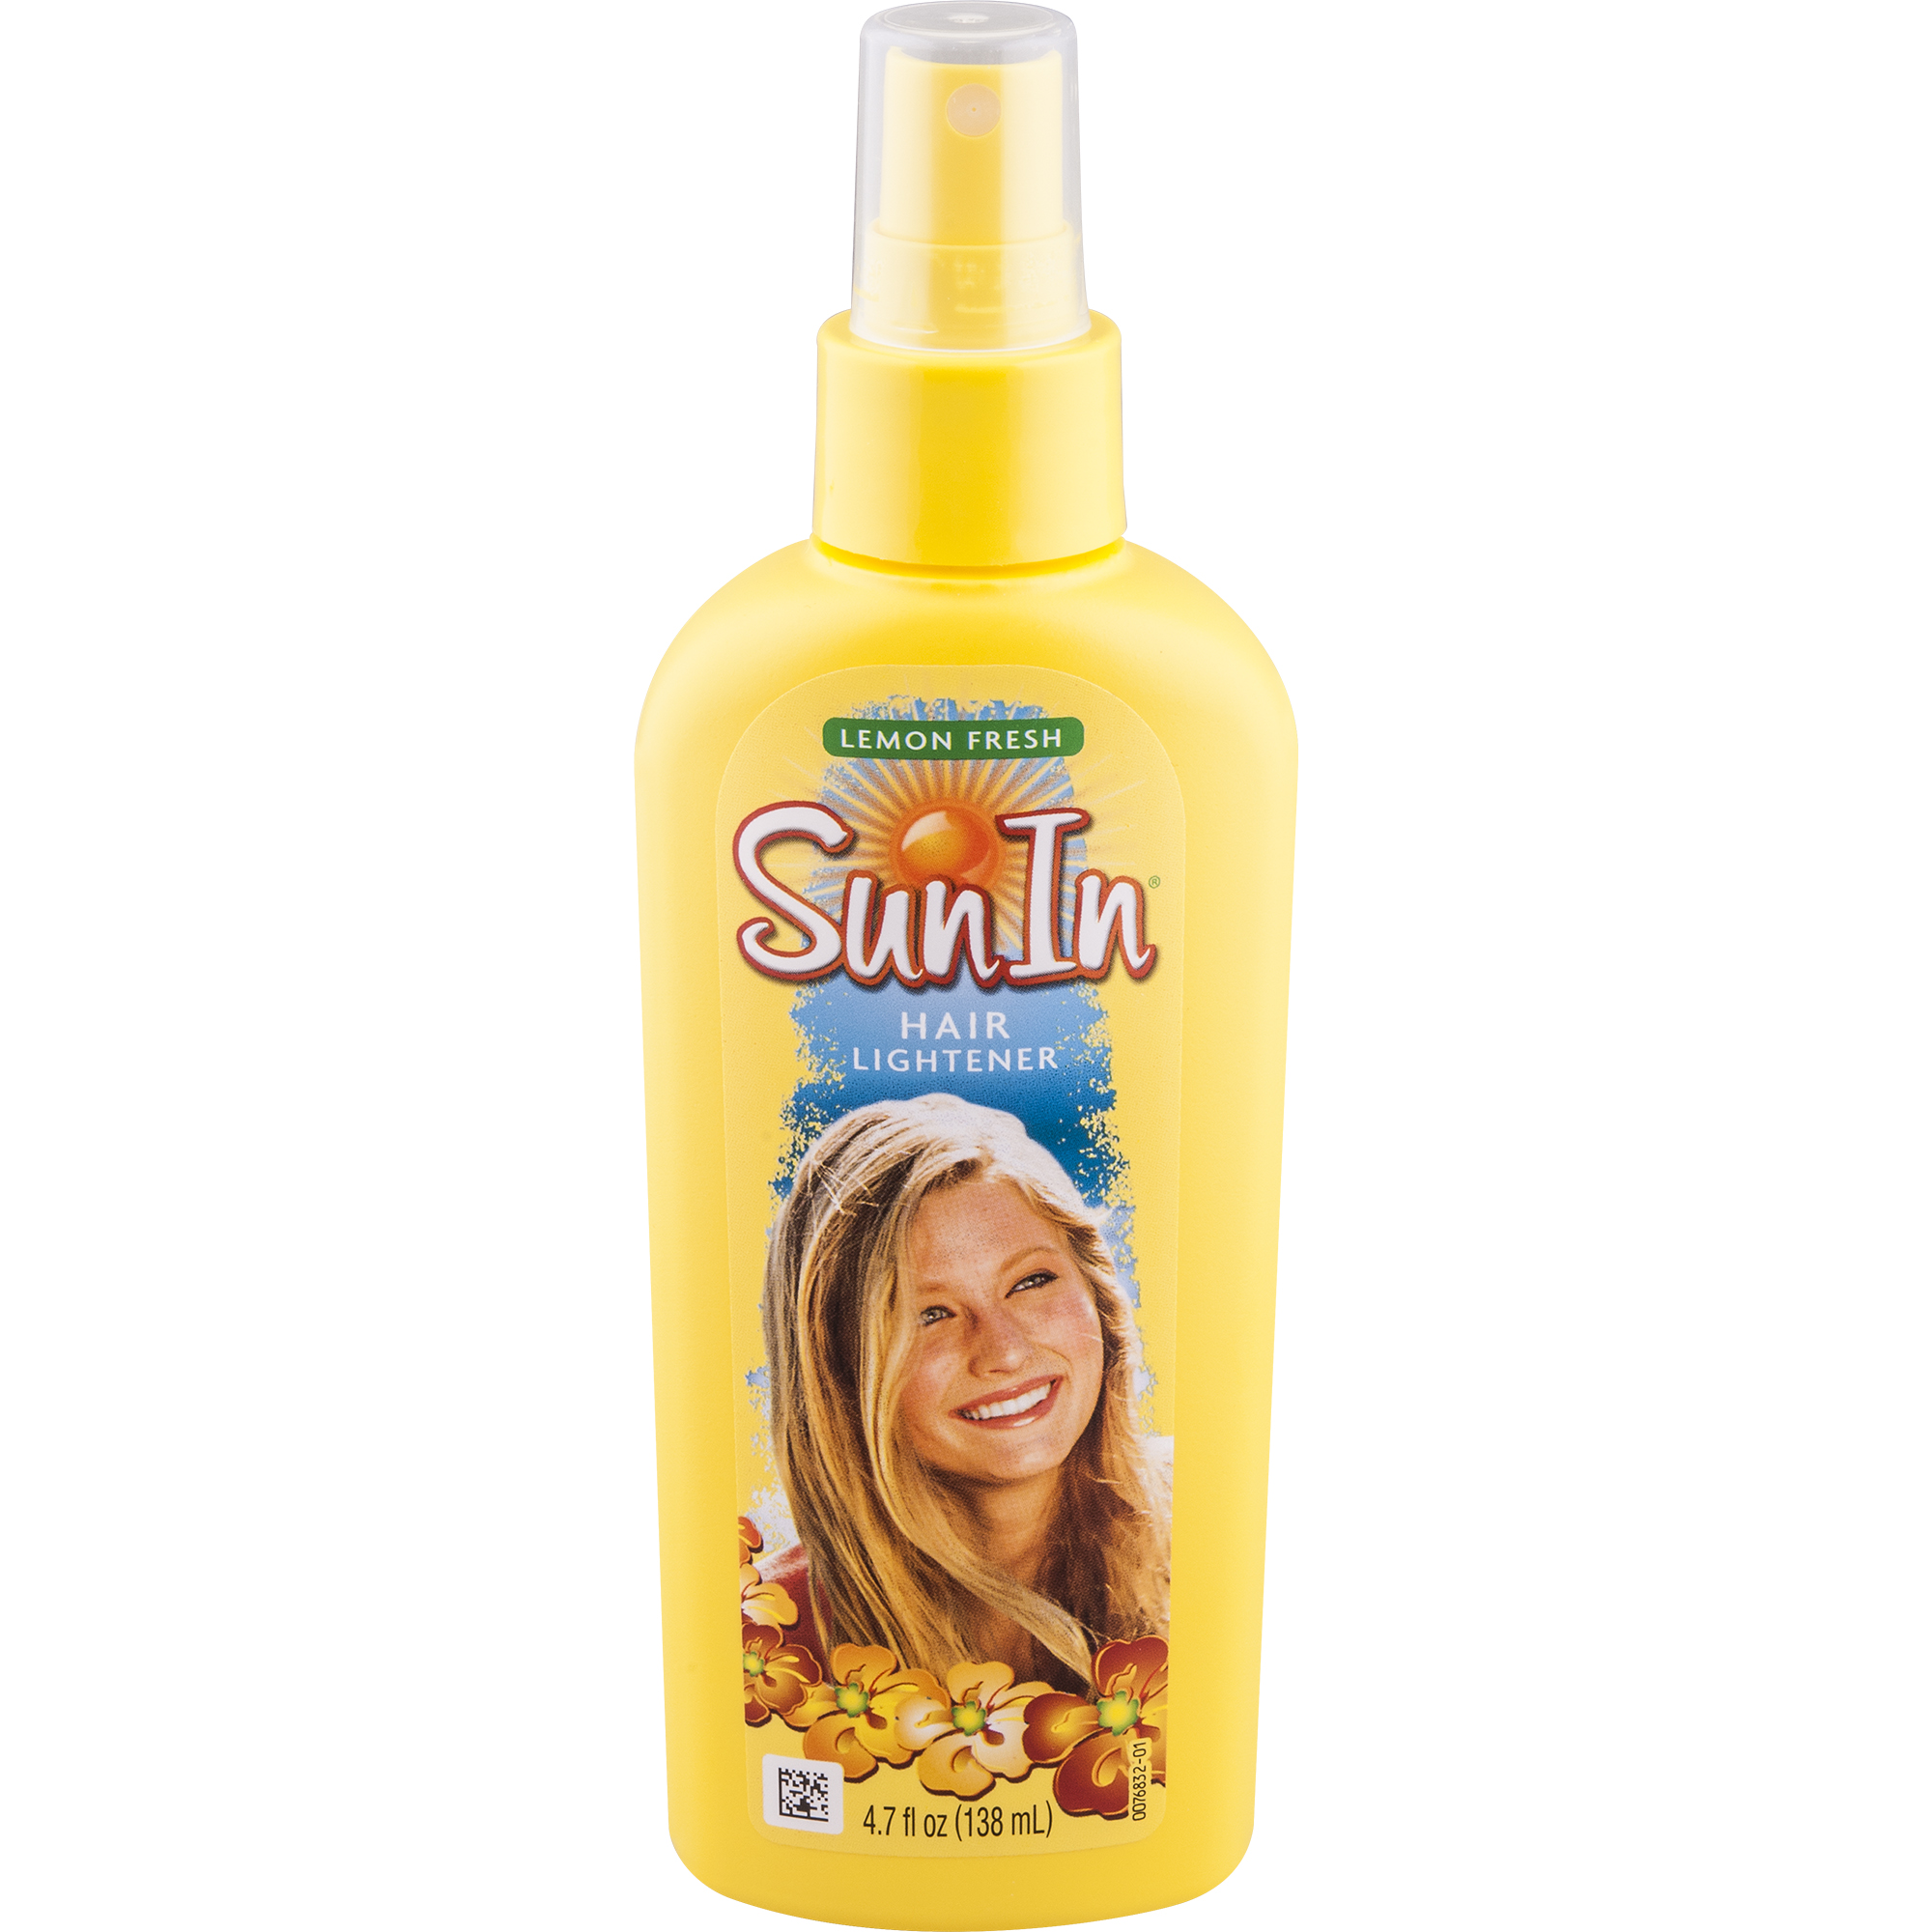 Sun In Hair Lightener Shine Enhancing Spray, Lemon, 4.7 oz - image 1 of 9